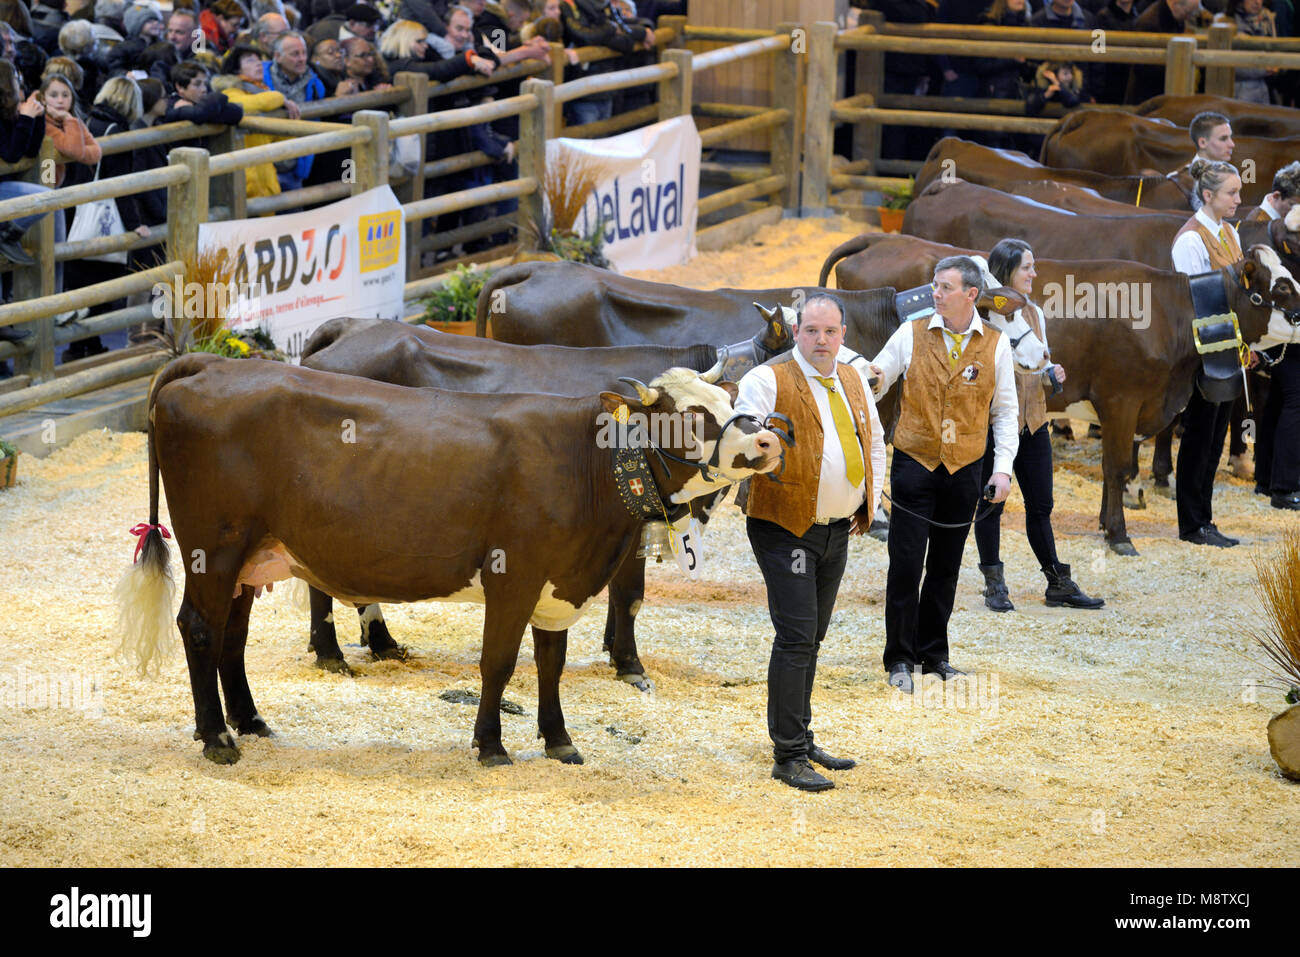 Los ganaderos exhibiendo su Premio vacas o ganado en Internacional de la agricultura de París o el Salon International de l'Agriculture Foto de stock